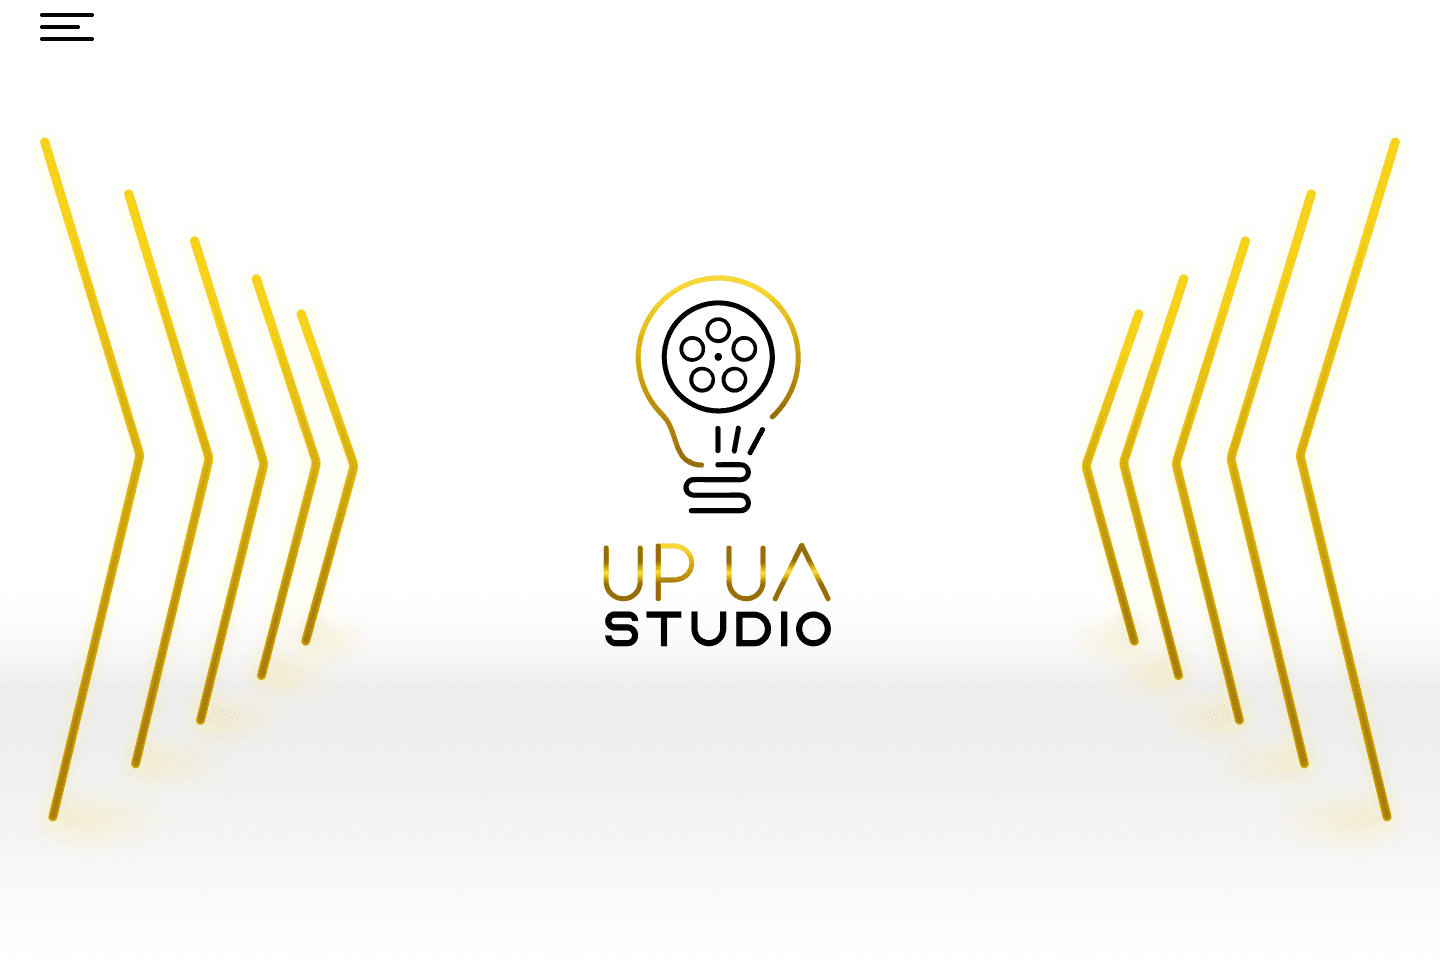 UP_UA_STUDIO 横幅